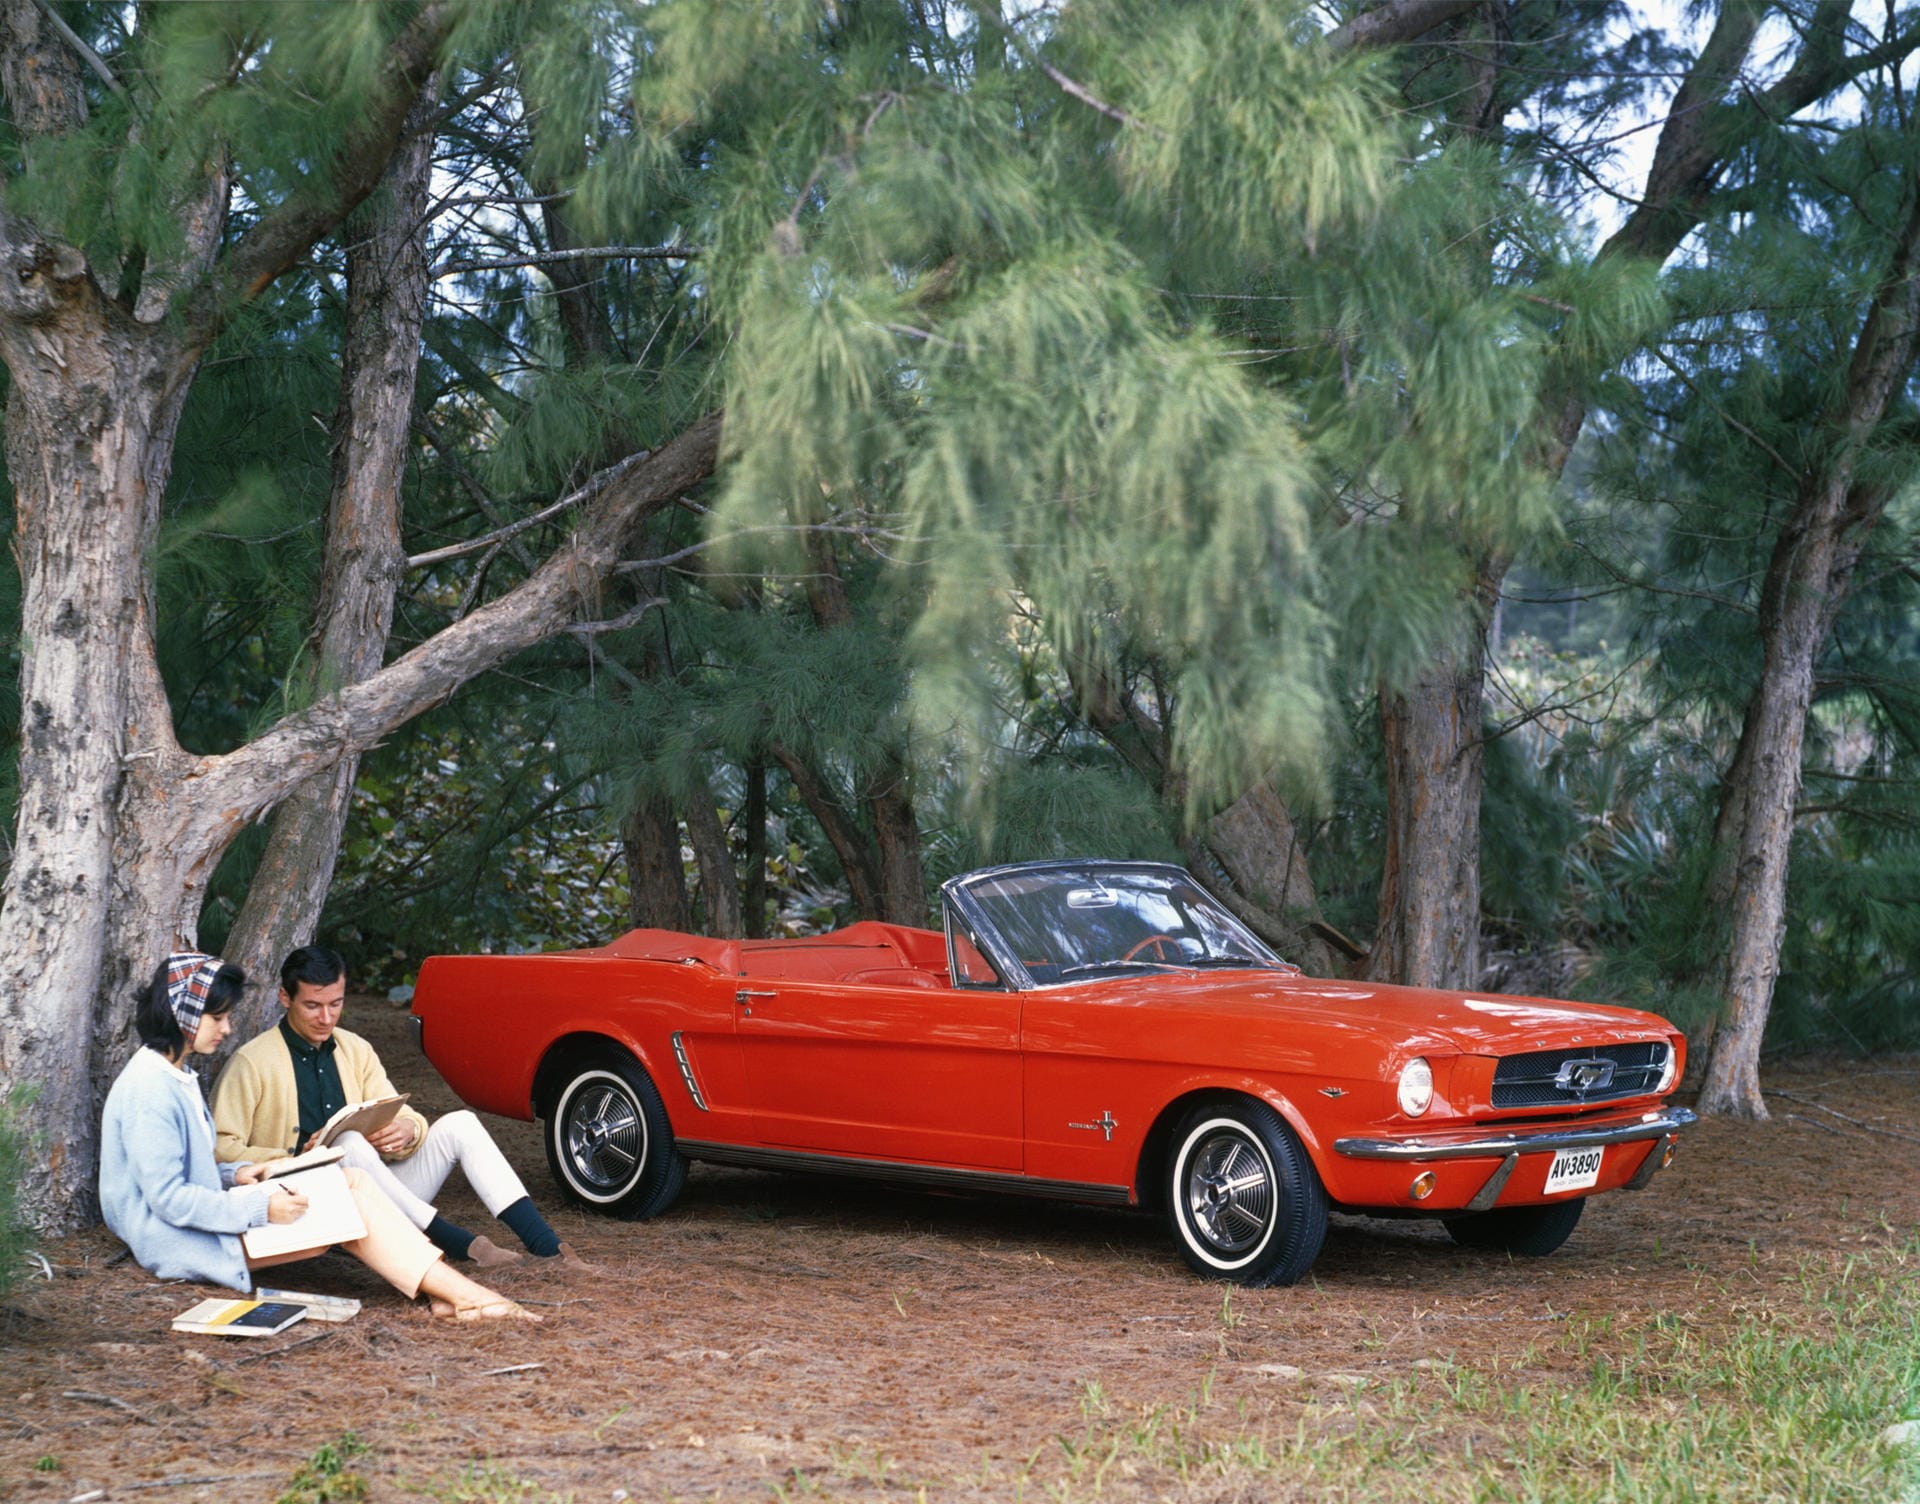 Erstmals baute Ford den Mustang 1964, heute läuft er in sechster Generation vom Band. Vor allem in den USA wurde der Sportwagen zur Ikone.